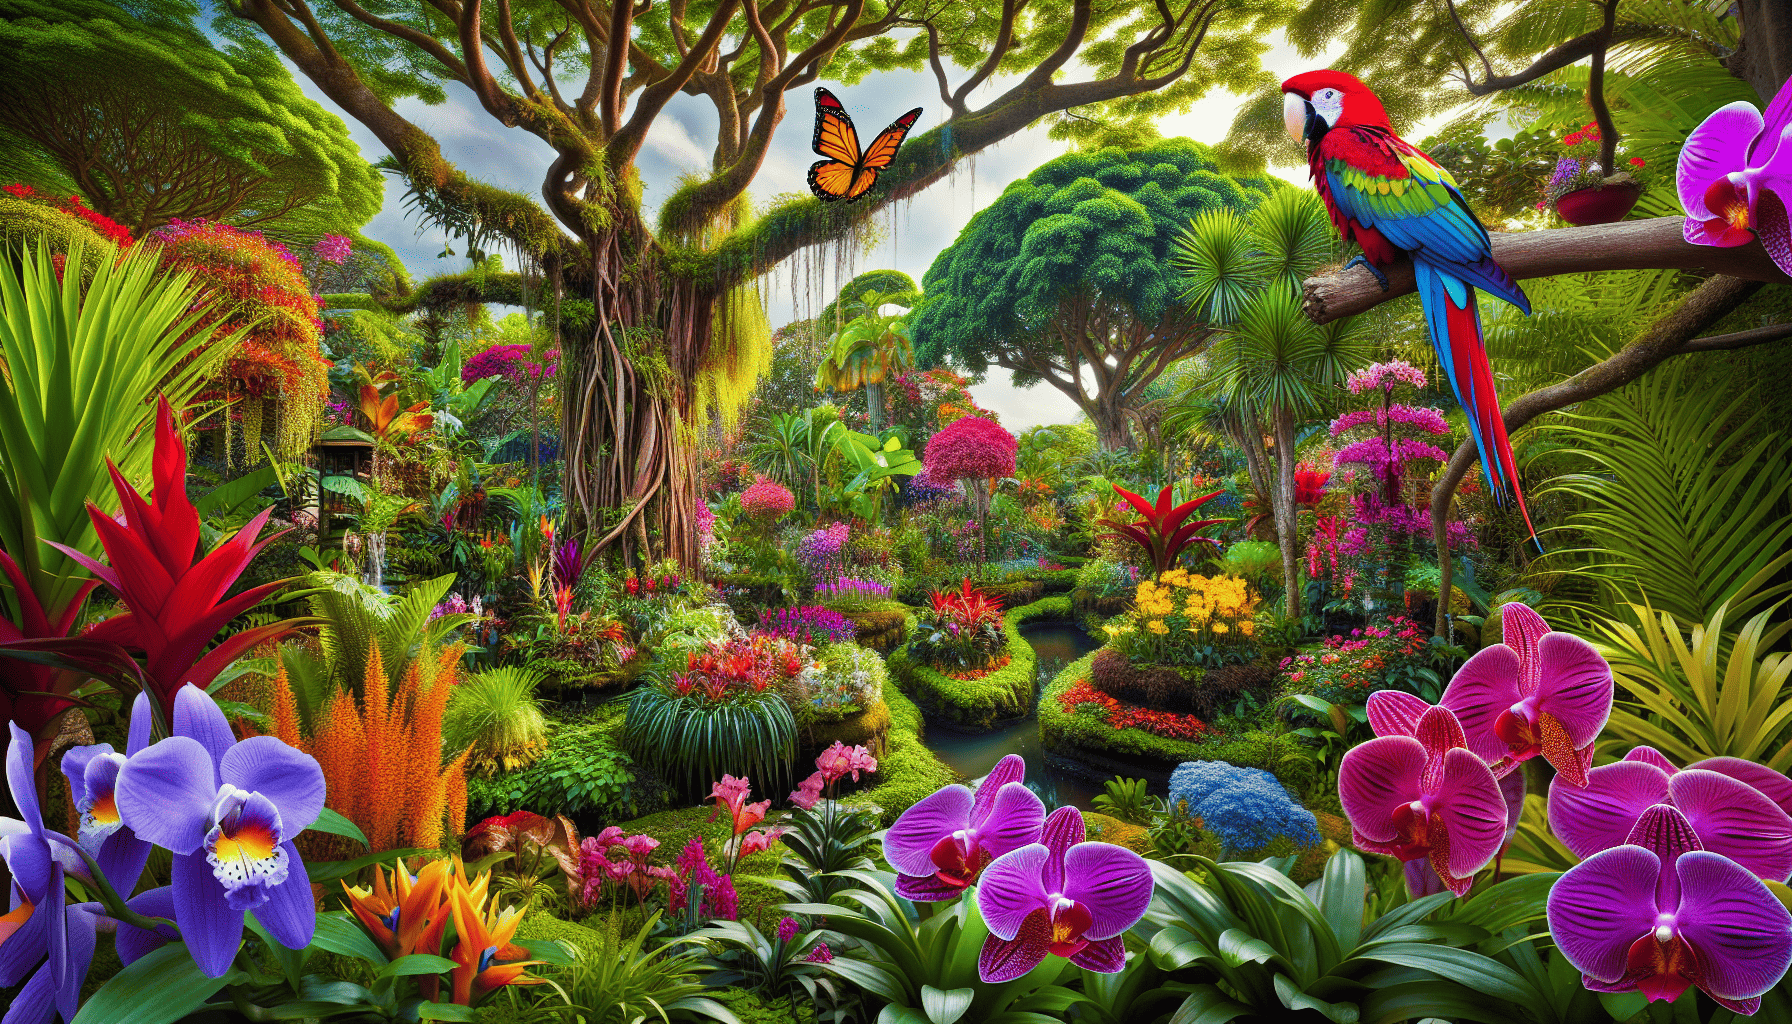 Exotic flora and fauna at Botanic Gardens